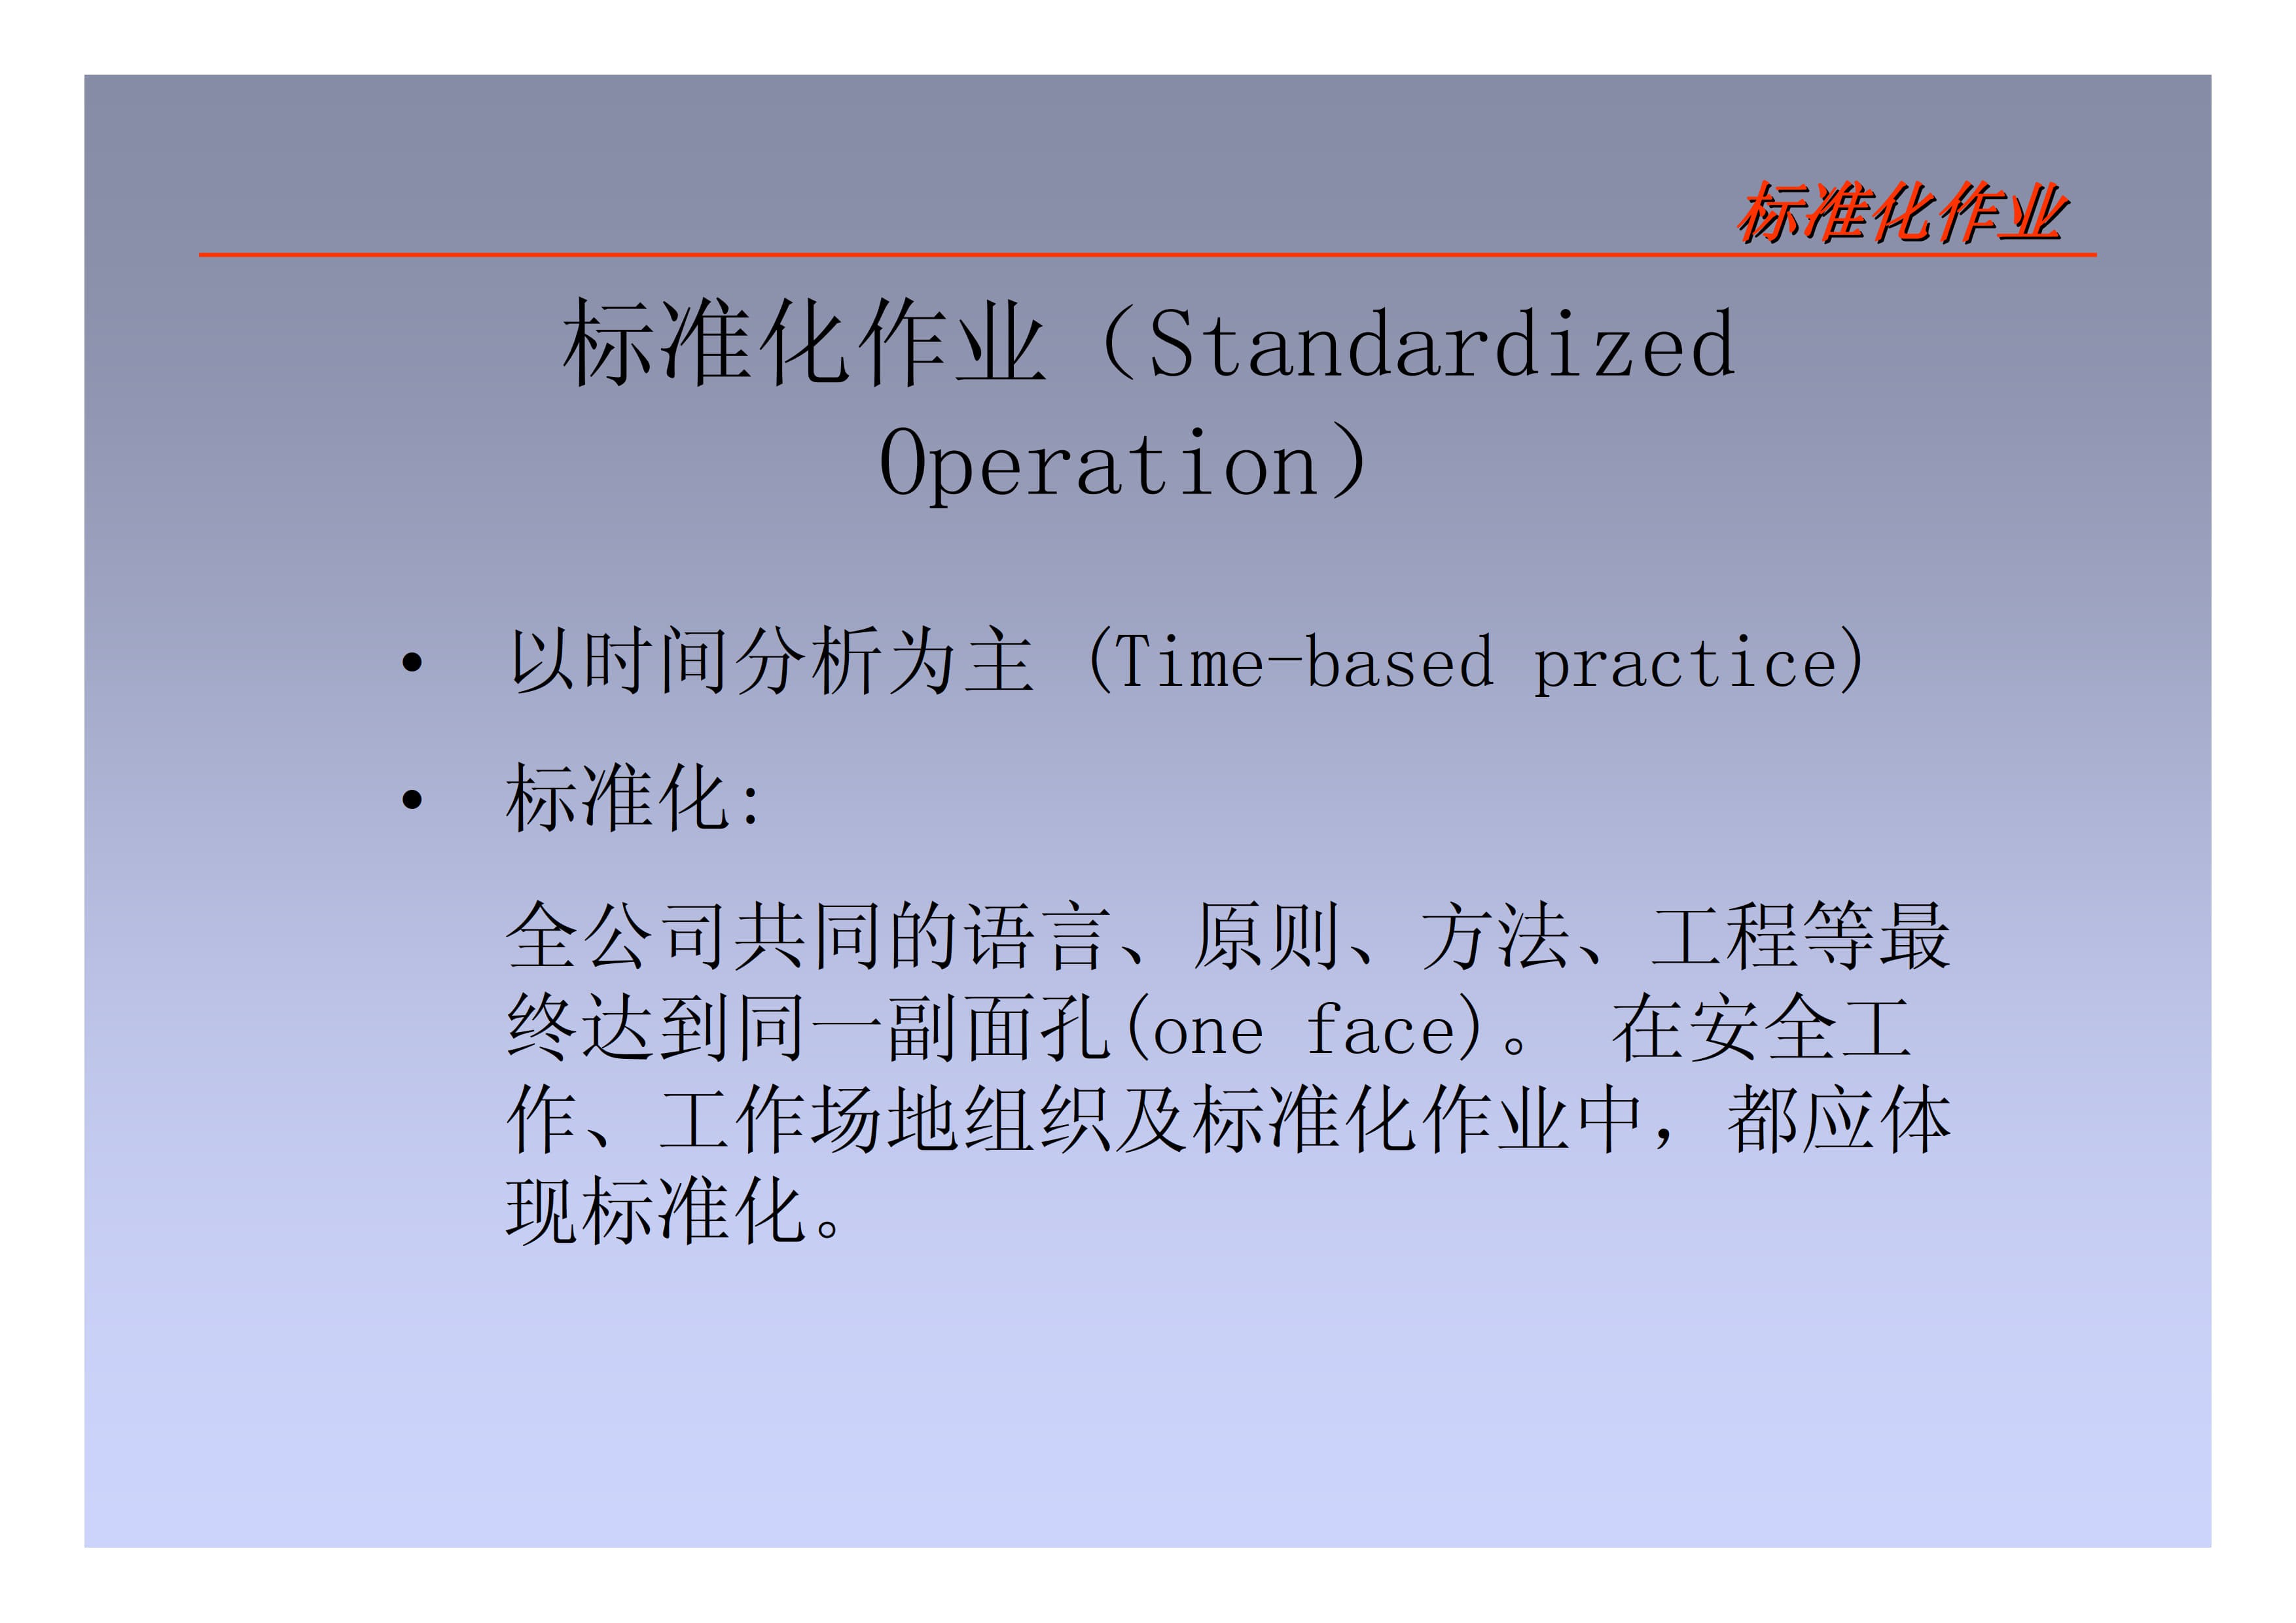 标准化作业_2.jpg